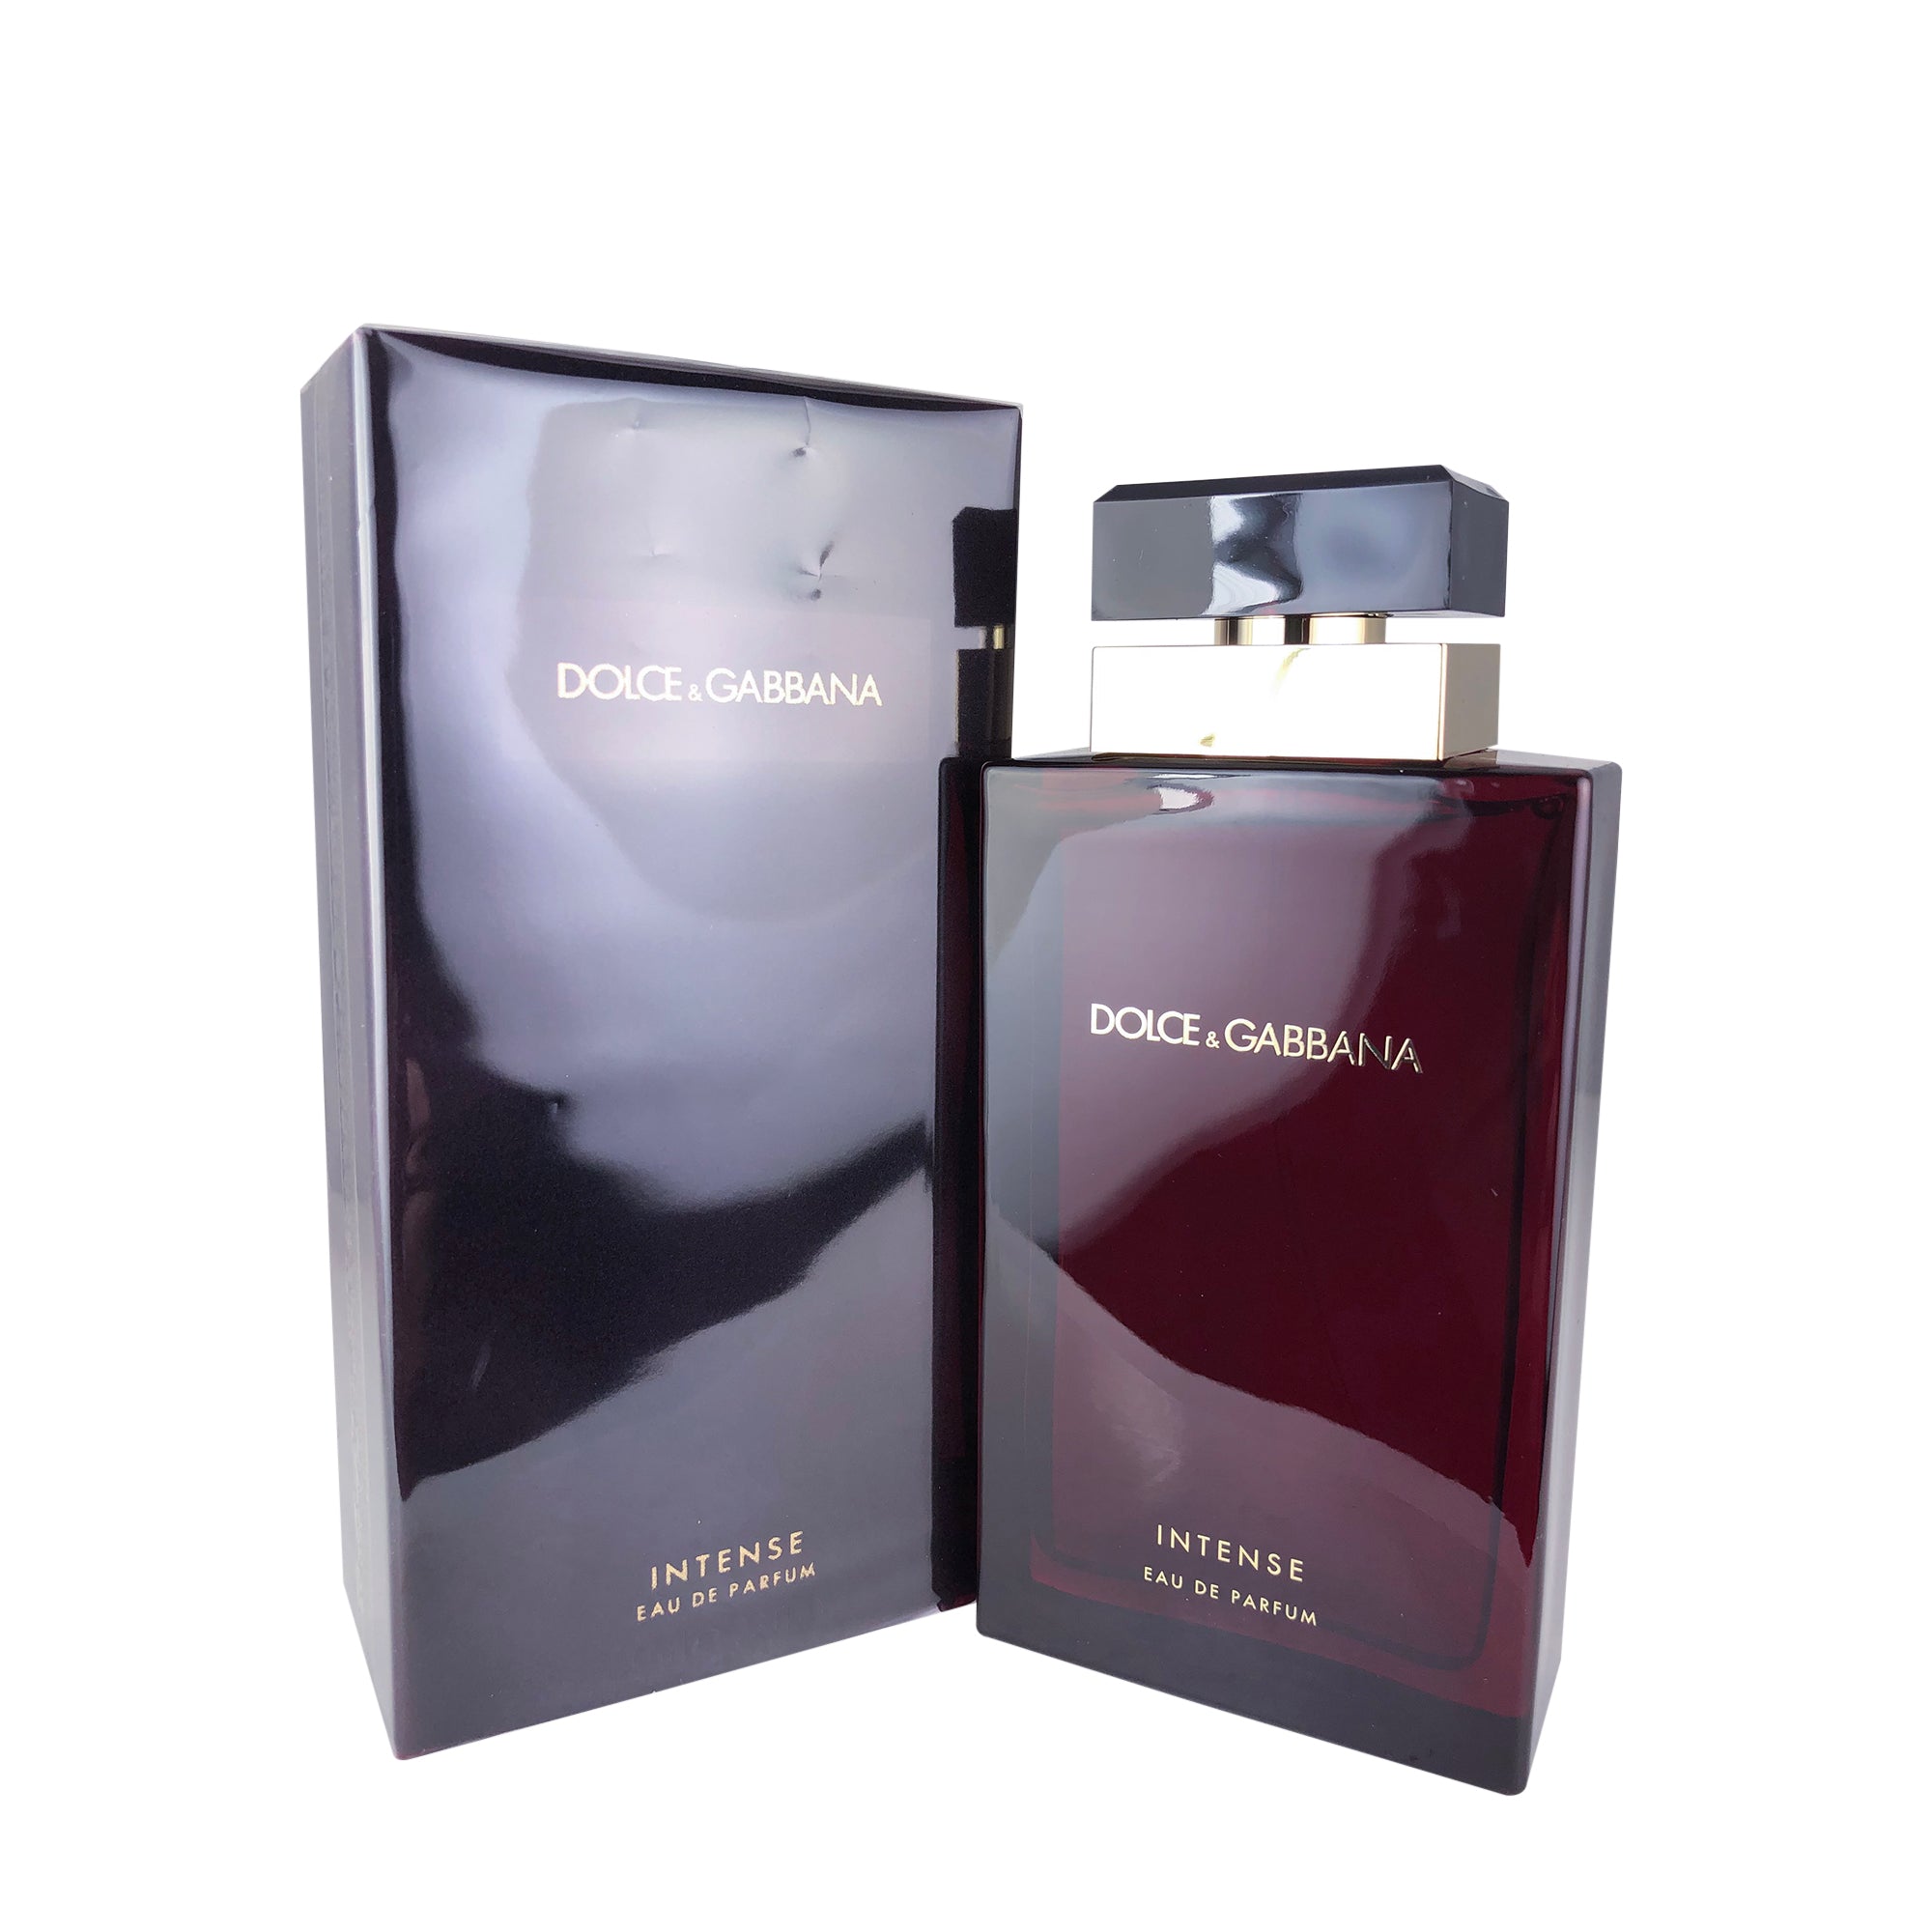 Dolce & Gabbana Intense Eau de Parfum for Women